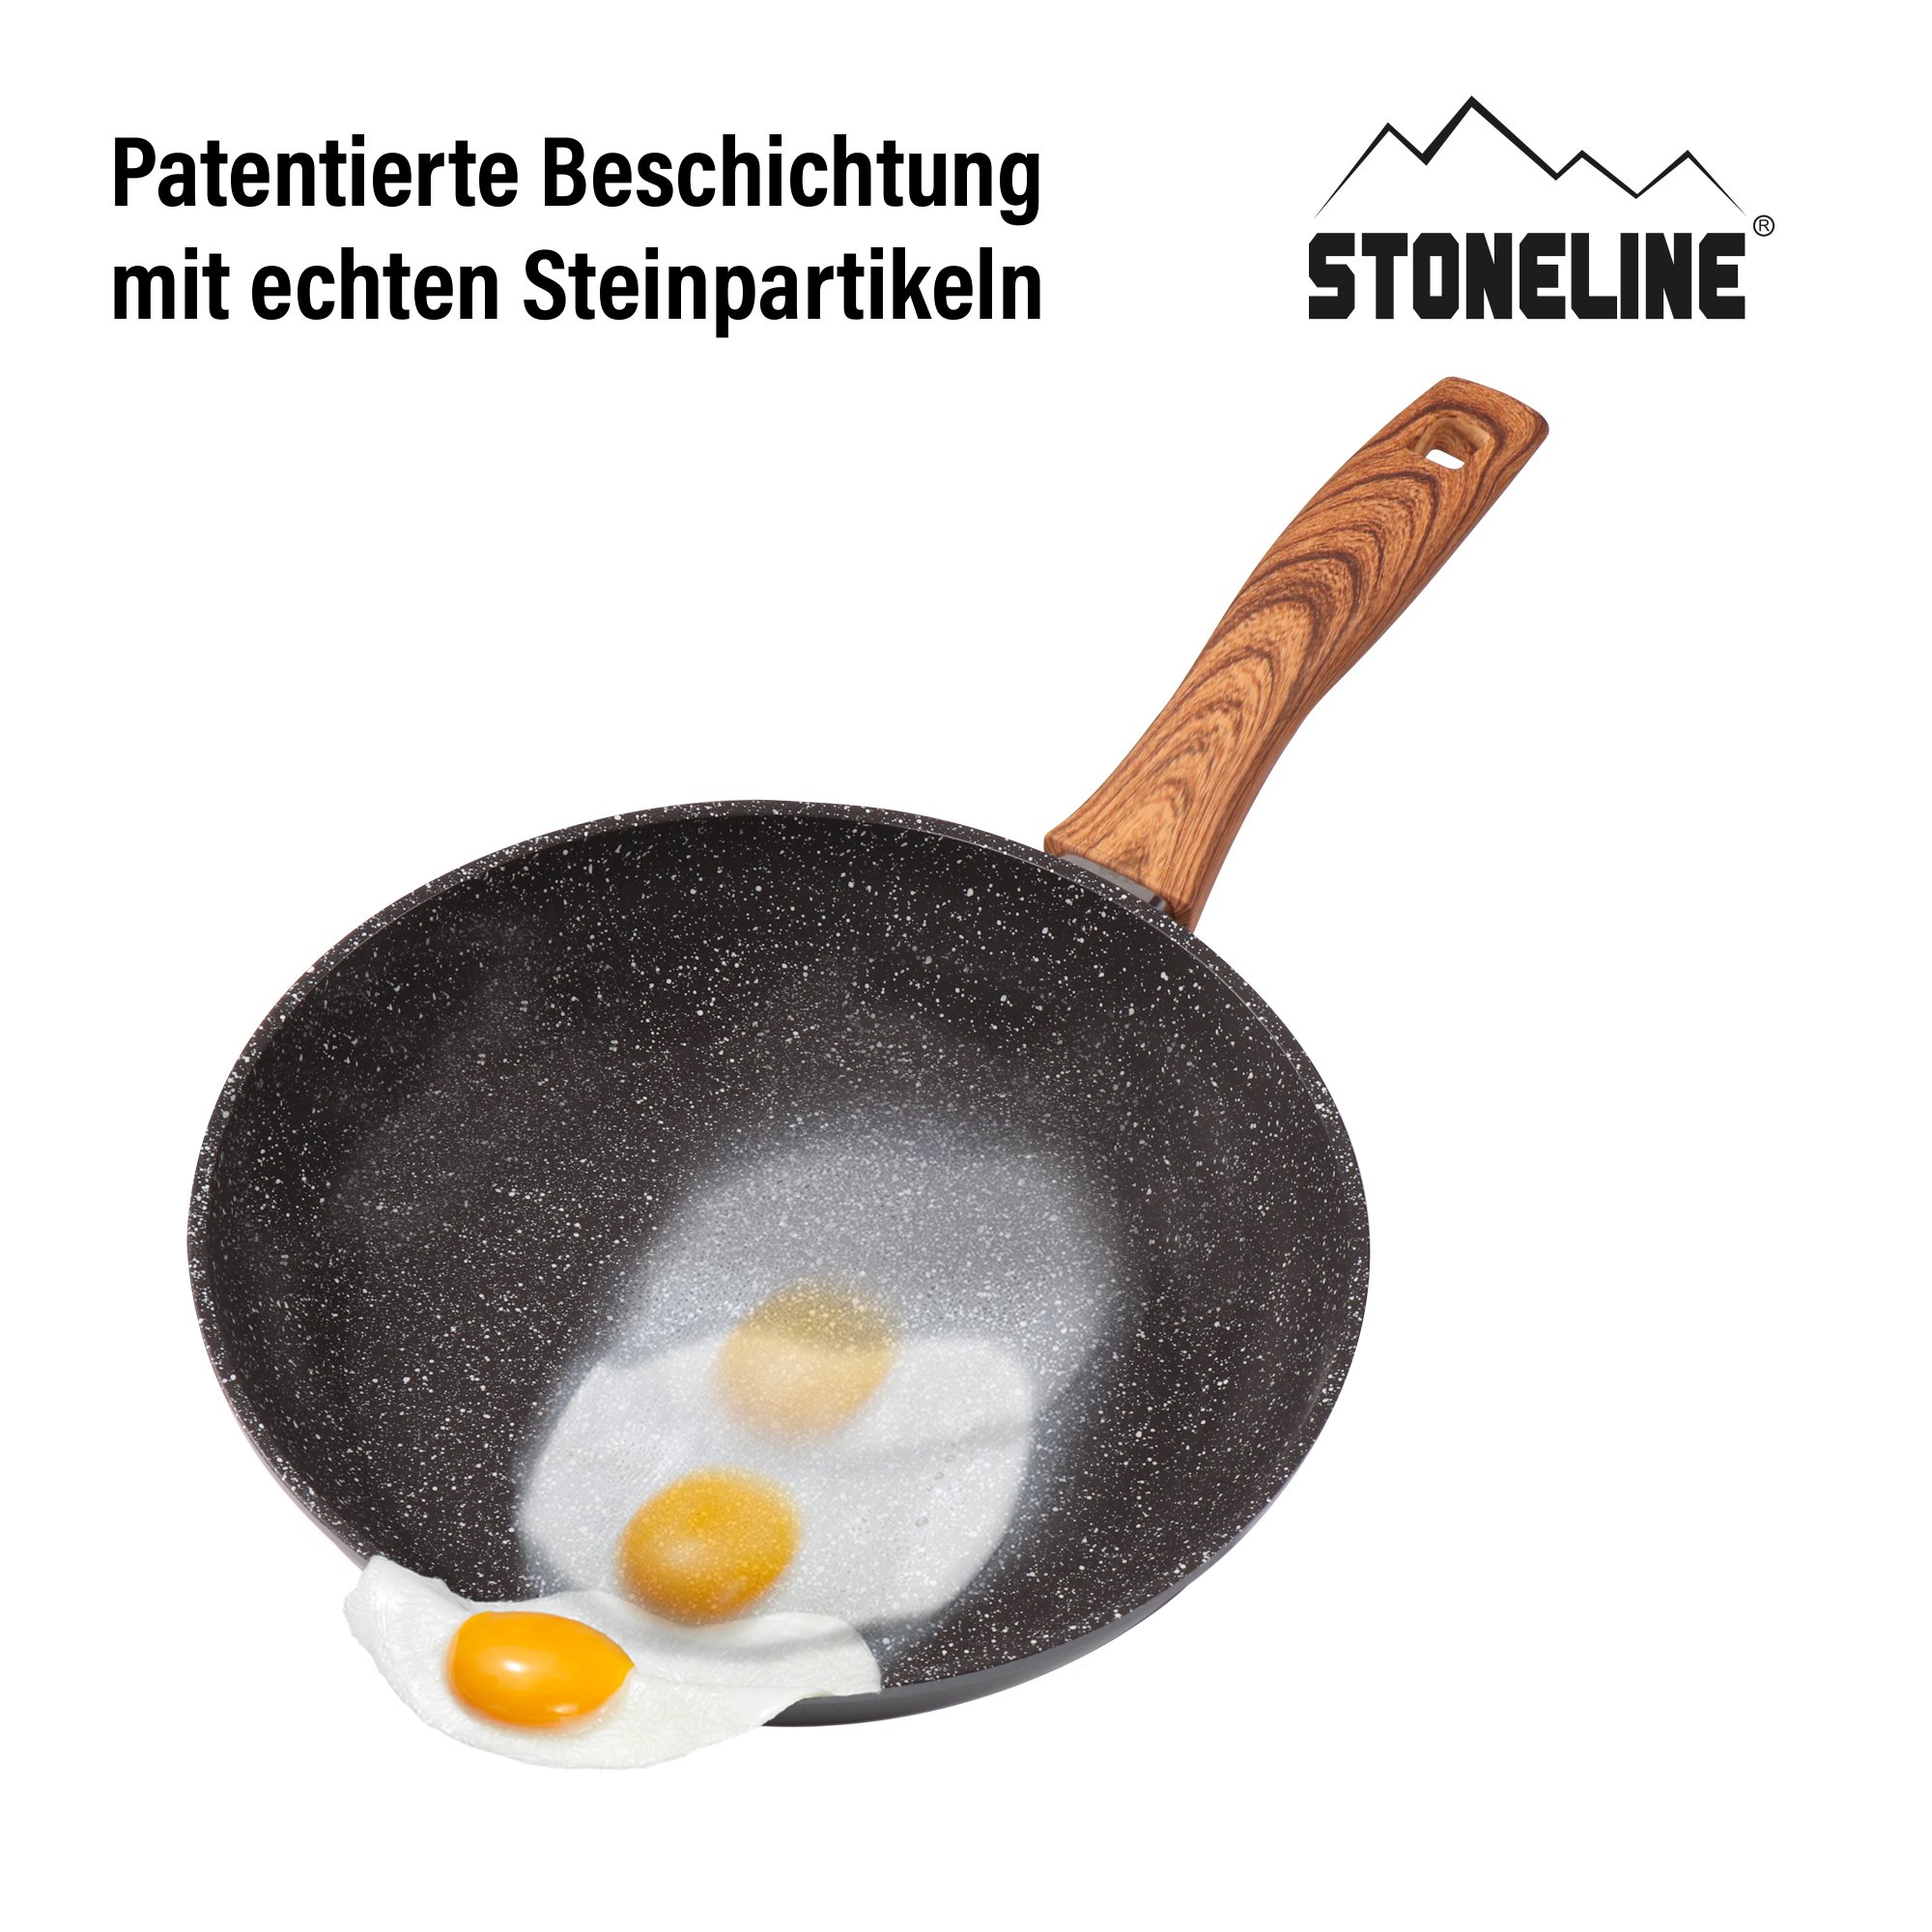 STONELINE® Back to Nature batterie de cuisine, 14 pièces, avec couvercles, casseroles & poêles compatible induction